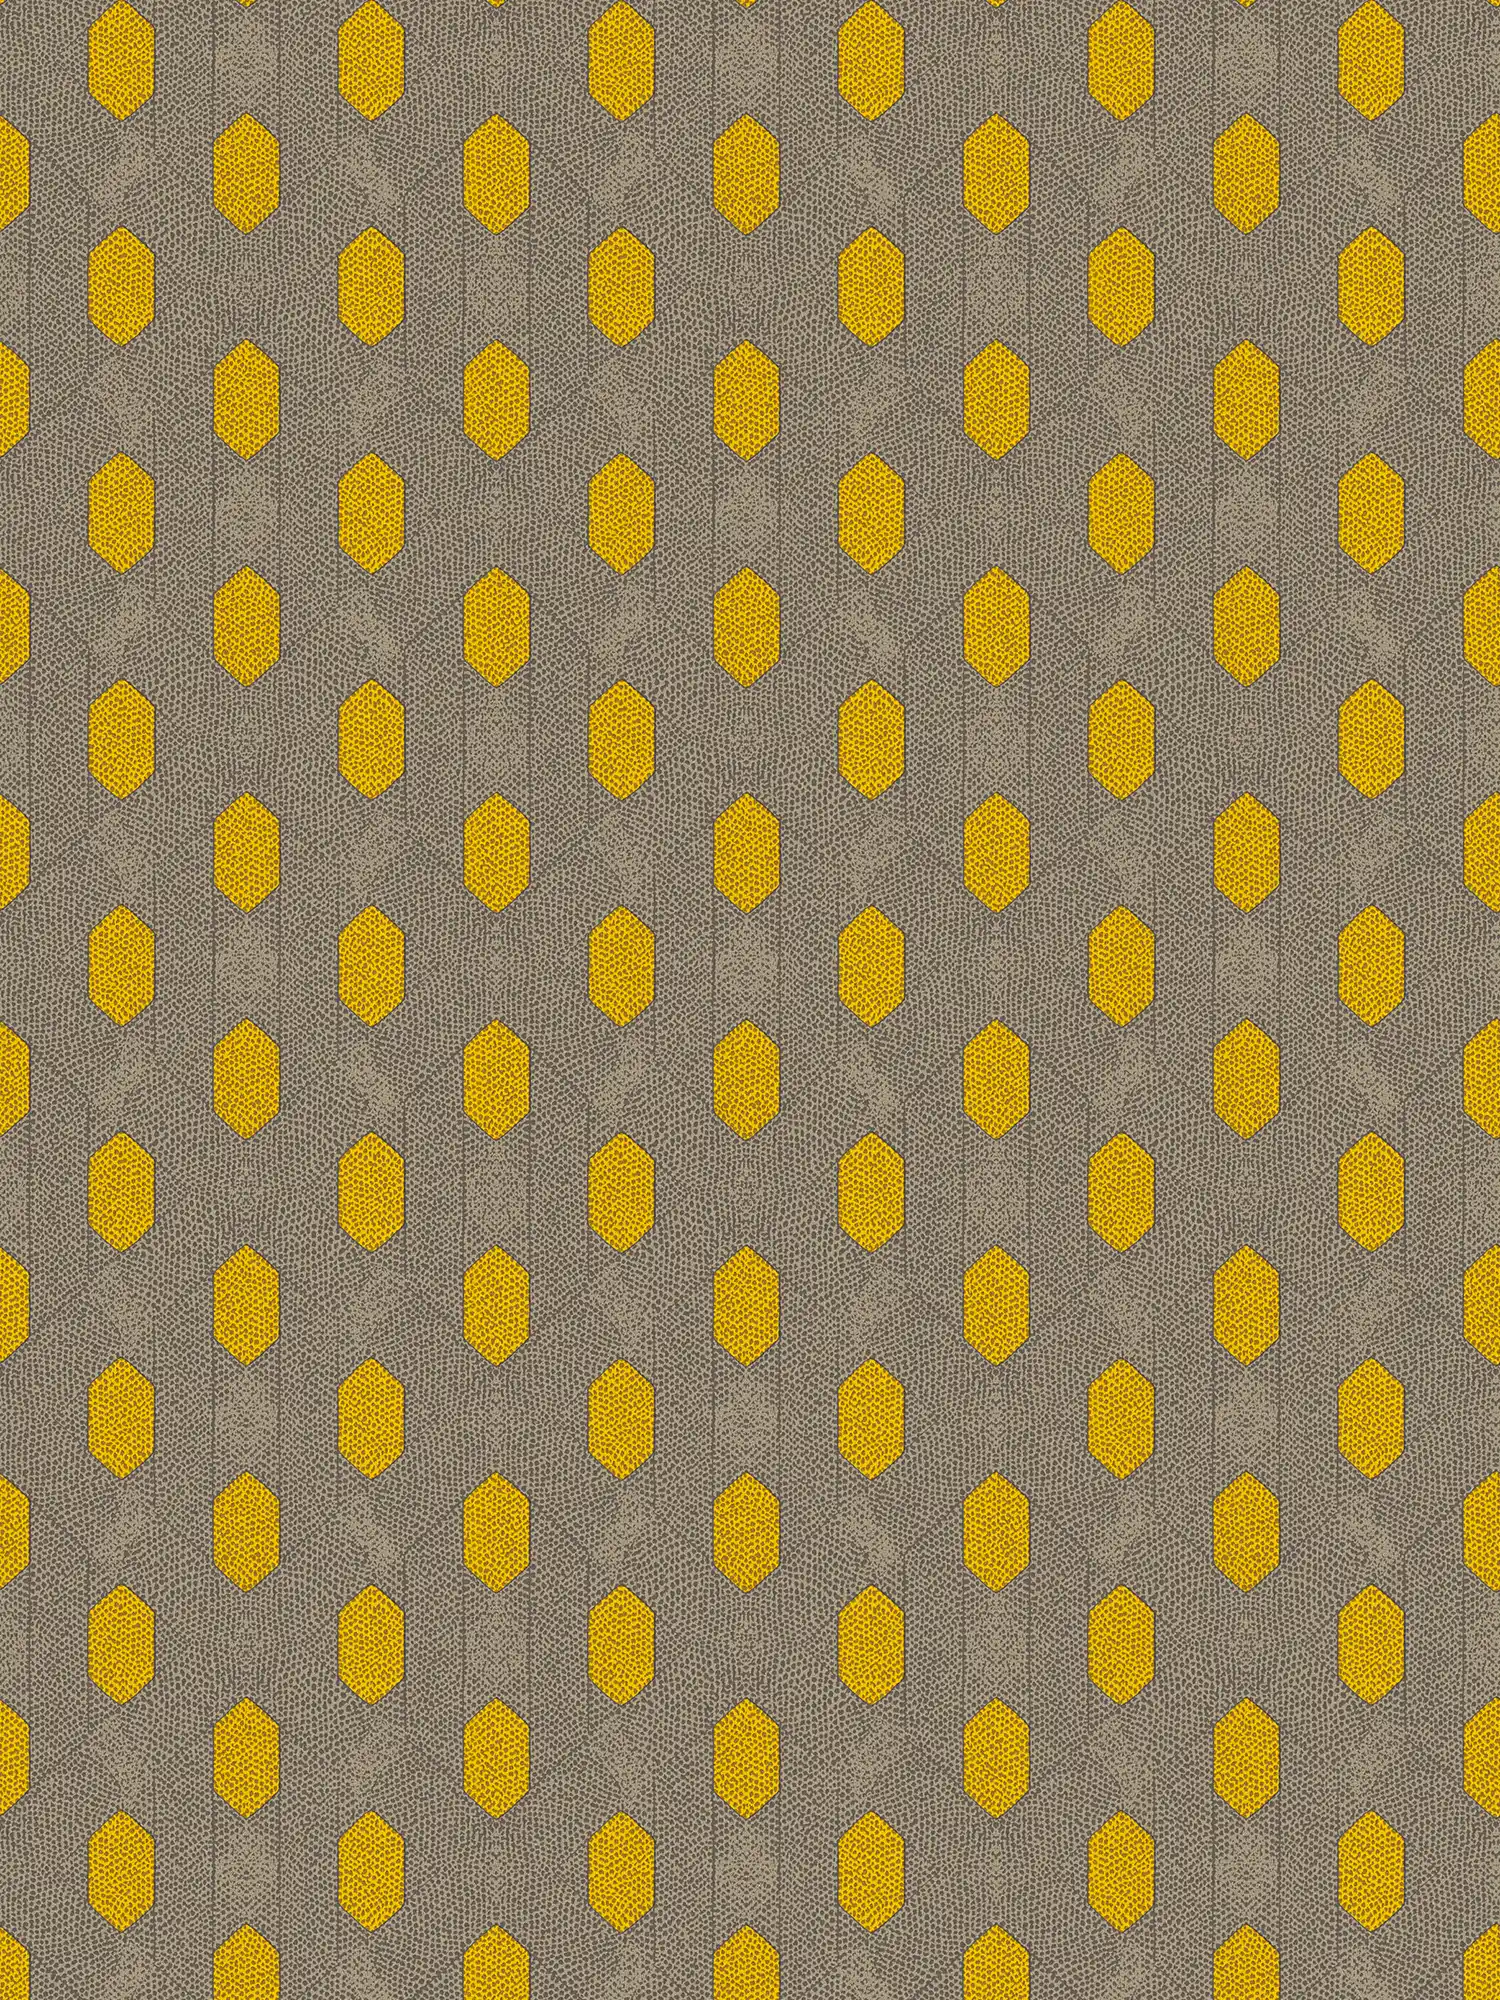 Carta da parati in tessuto non tessuto con motivo geometrico a punti - giallo, grigio, marrone
